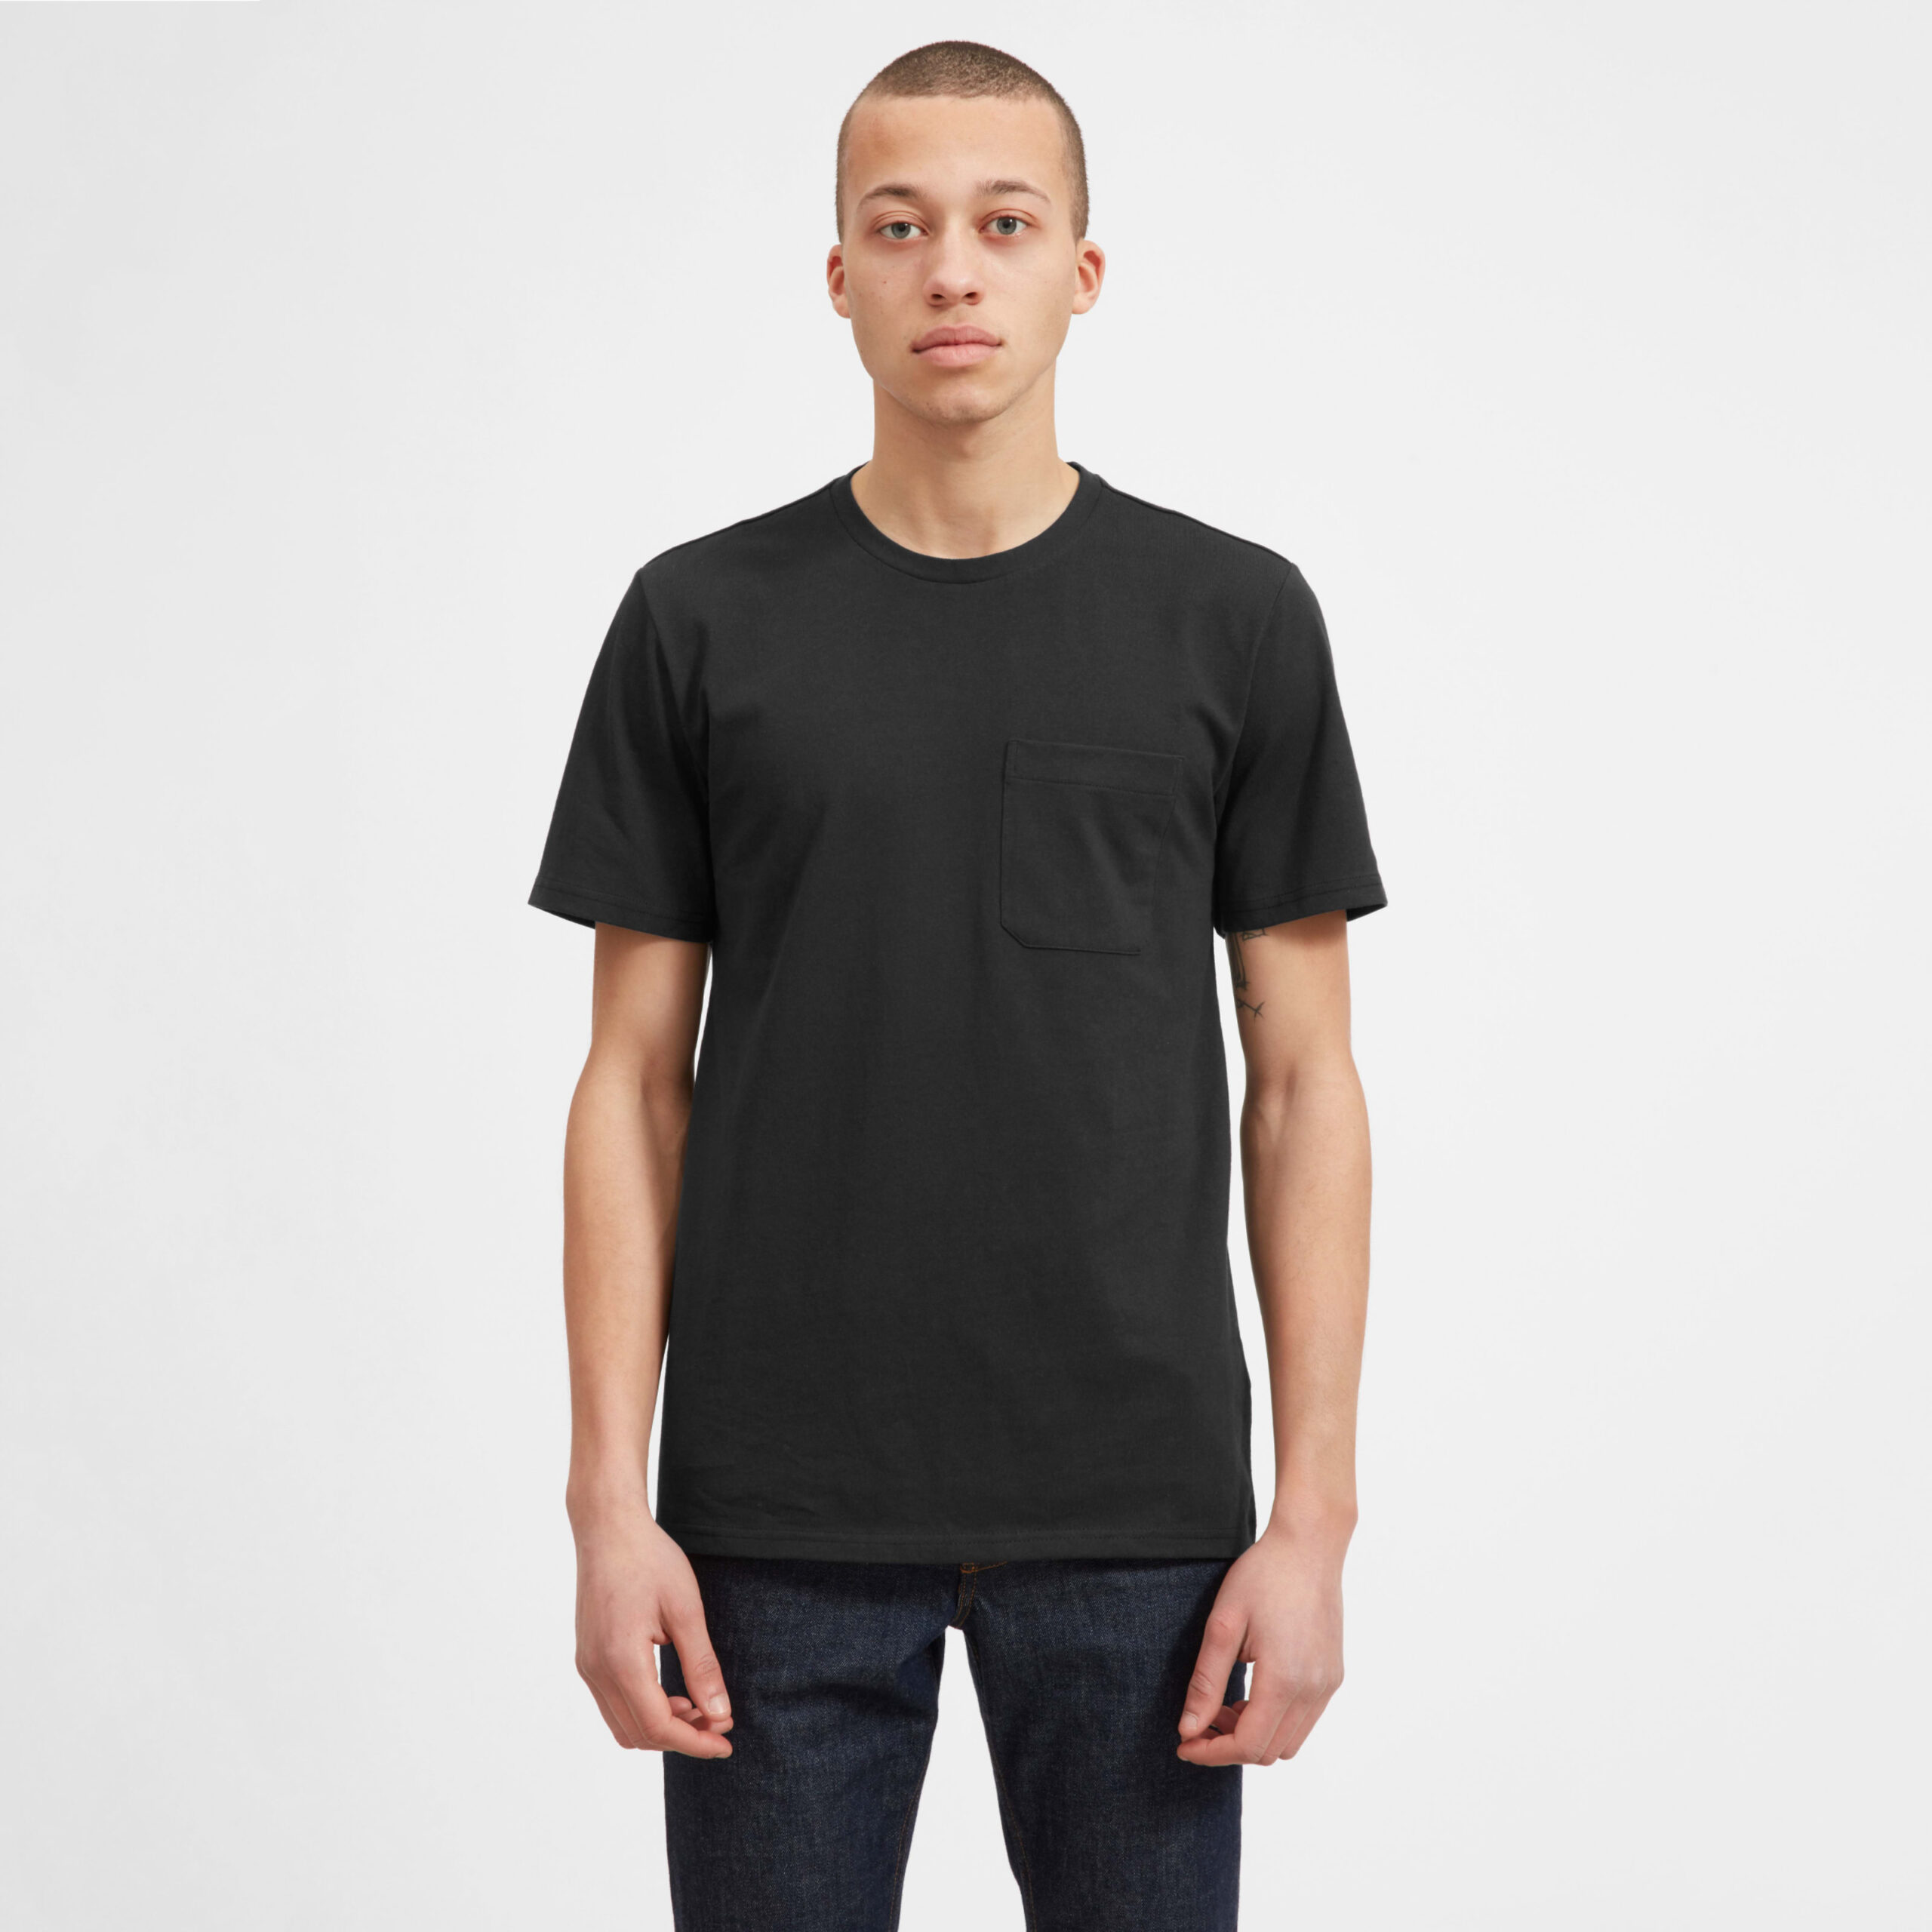 Men&#8217;s Premium-Weight Pocket | Uniform T-Shirt by Everlane in Black